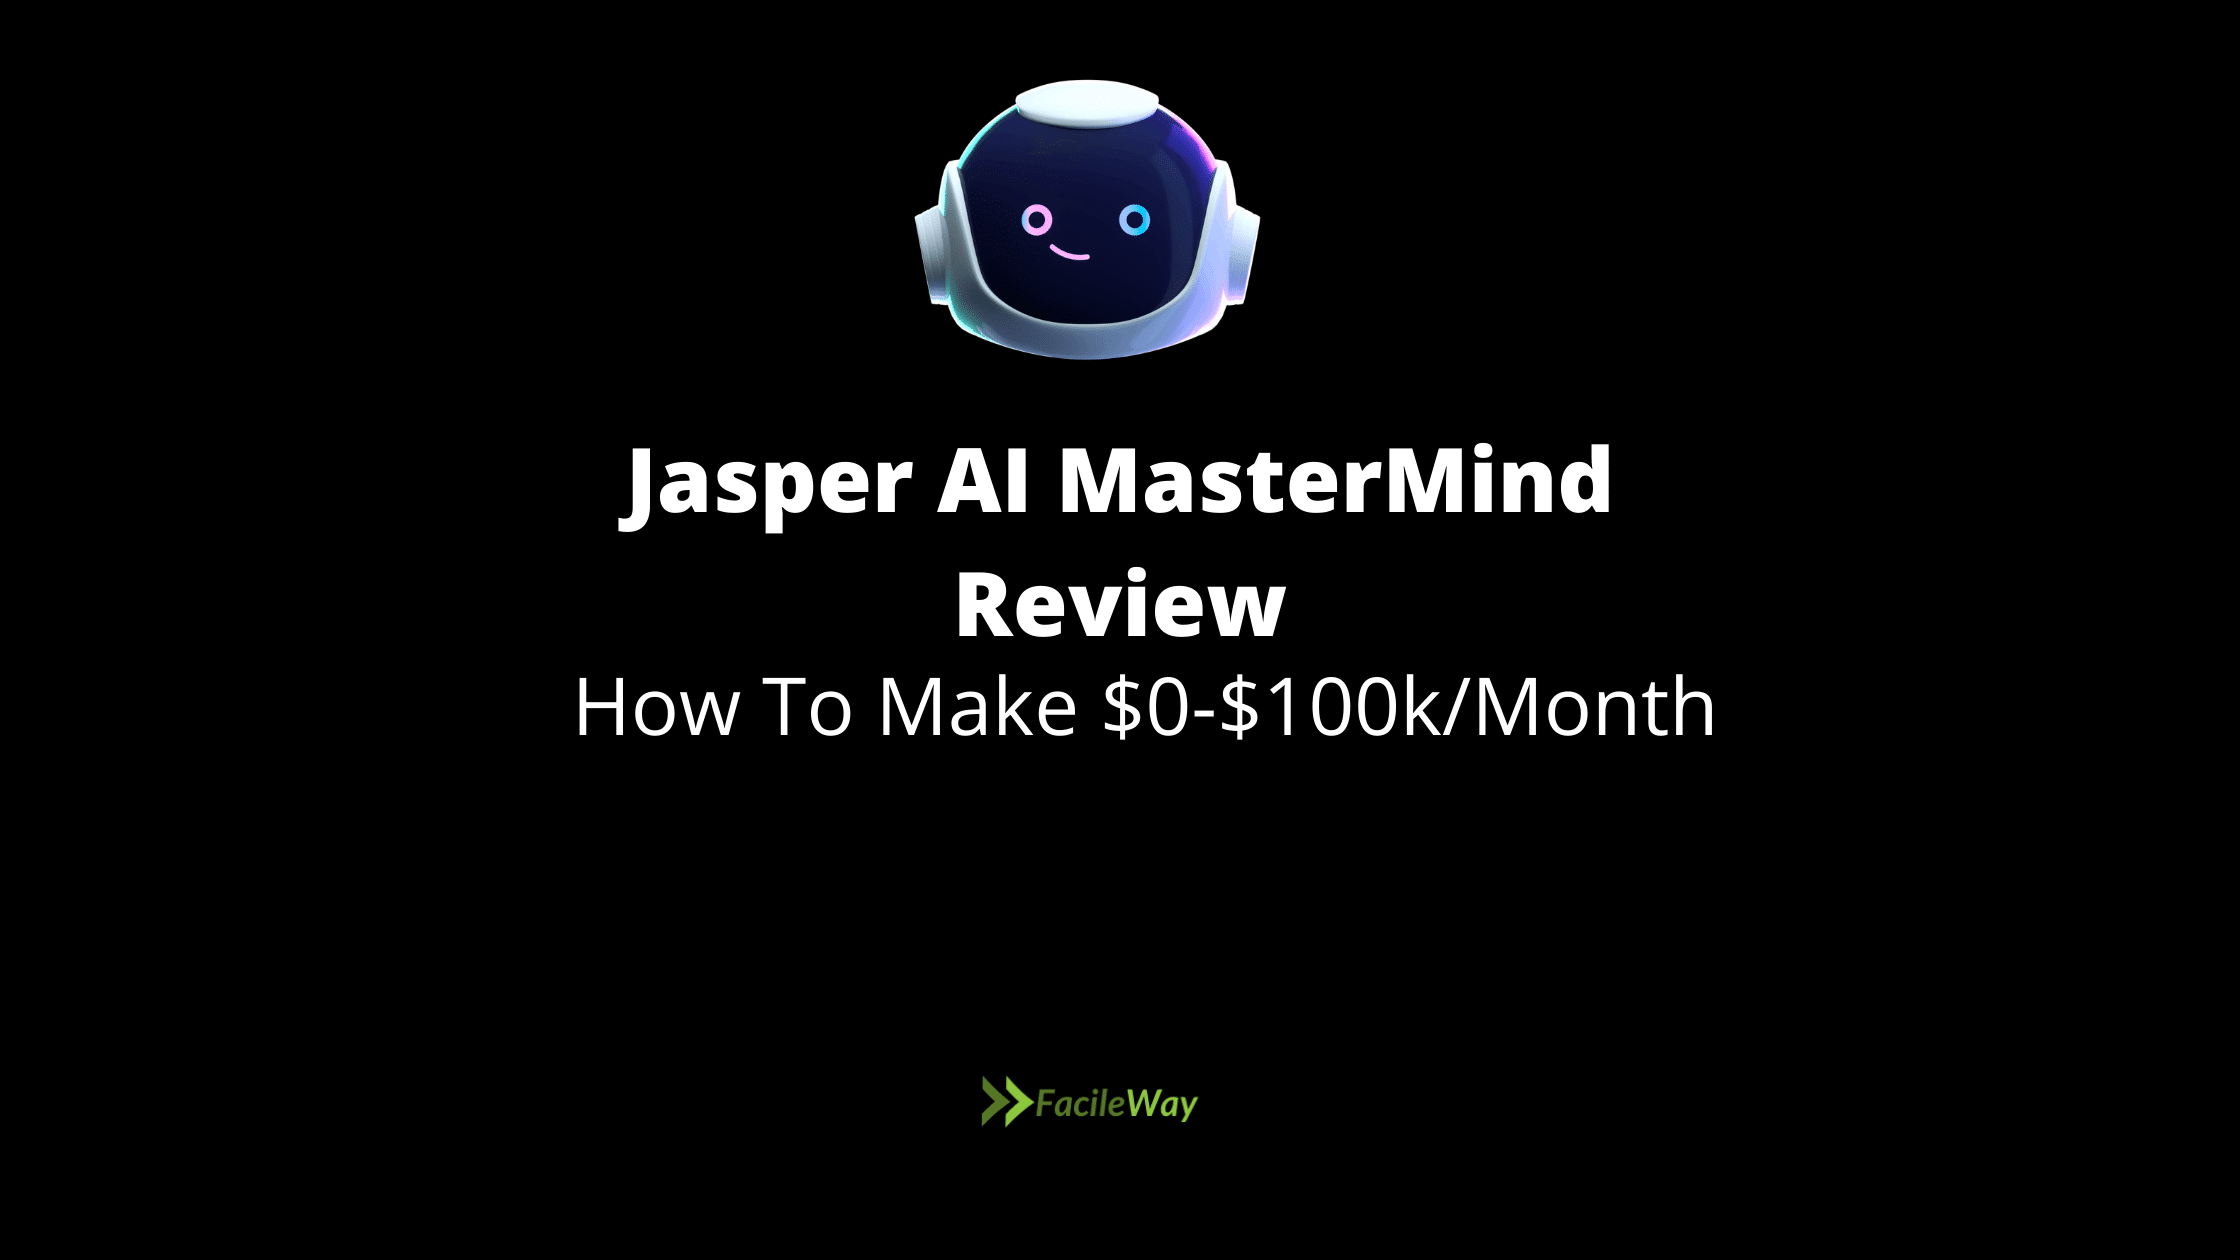 Jasper AI MasterMind Review